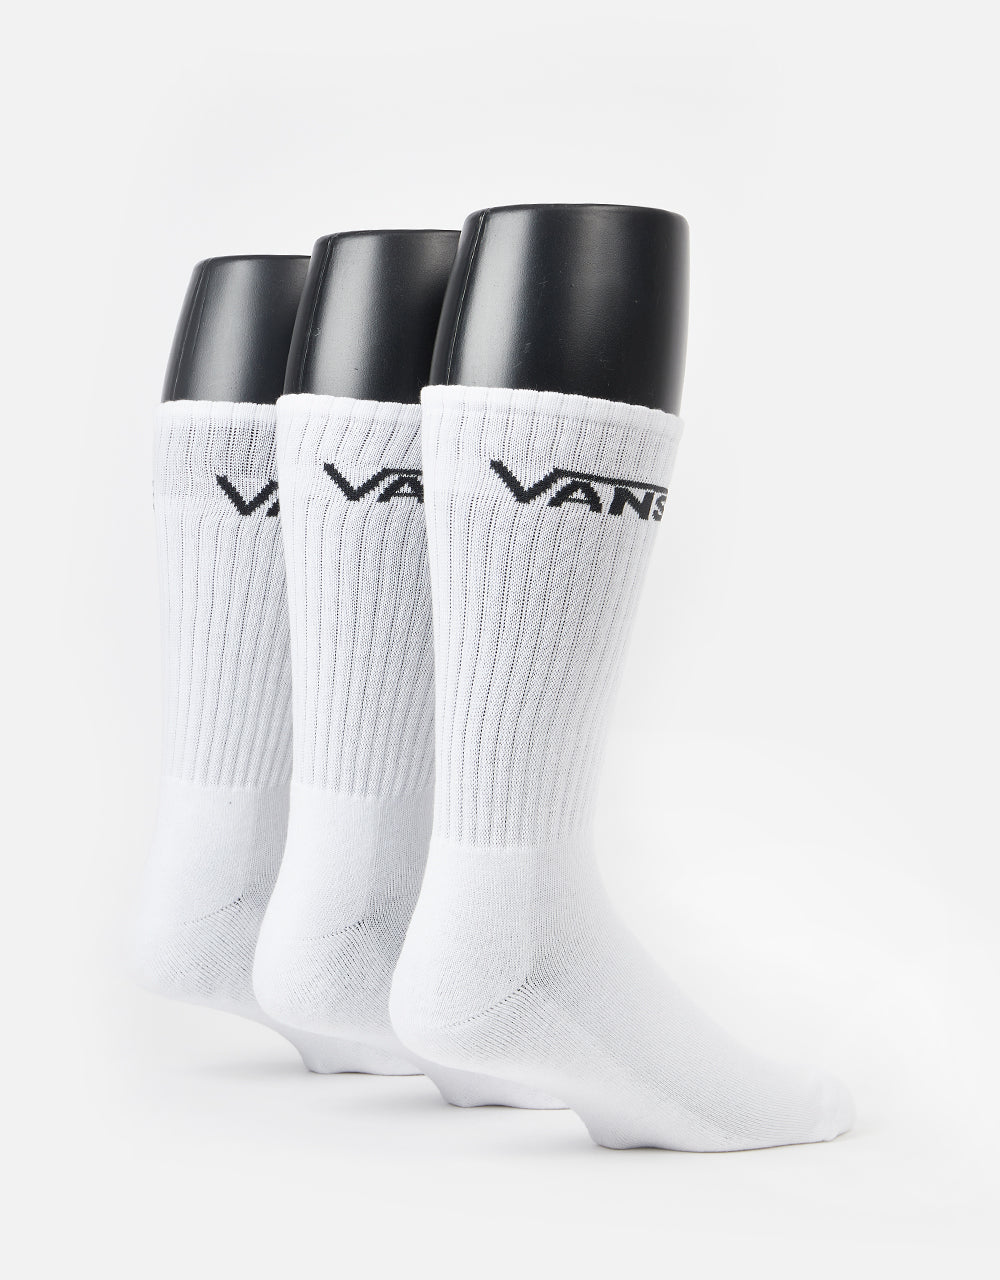 Vans Classic Crew 3 Pack Socks - White